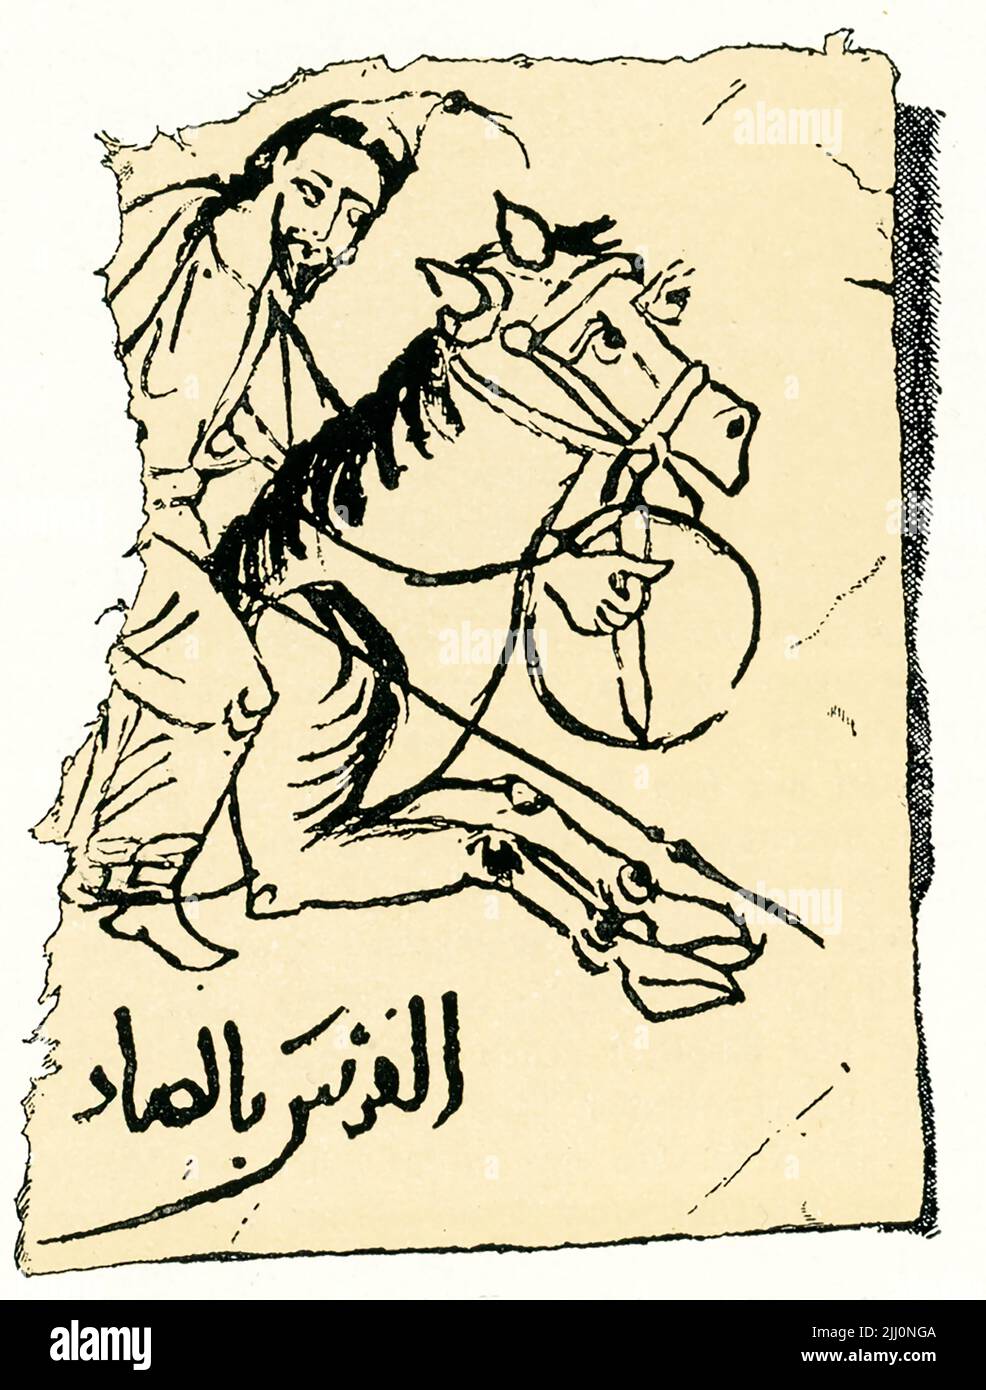 Esta imagen de 1910 muestra a un jinete árabe. Es parte de un papiro árabe del siglo 10th. Es parte de la colección del Archduque Rainer en Viena, Austria. Foto de stock